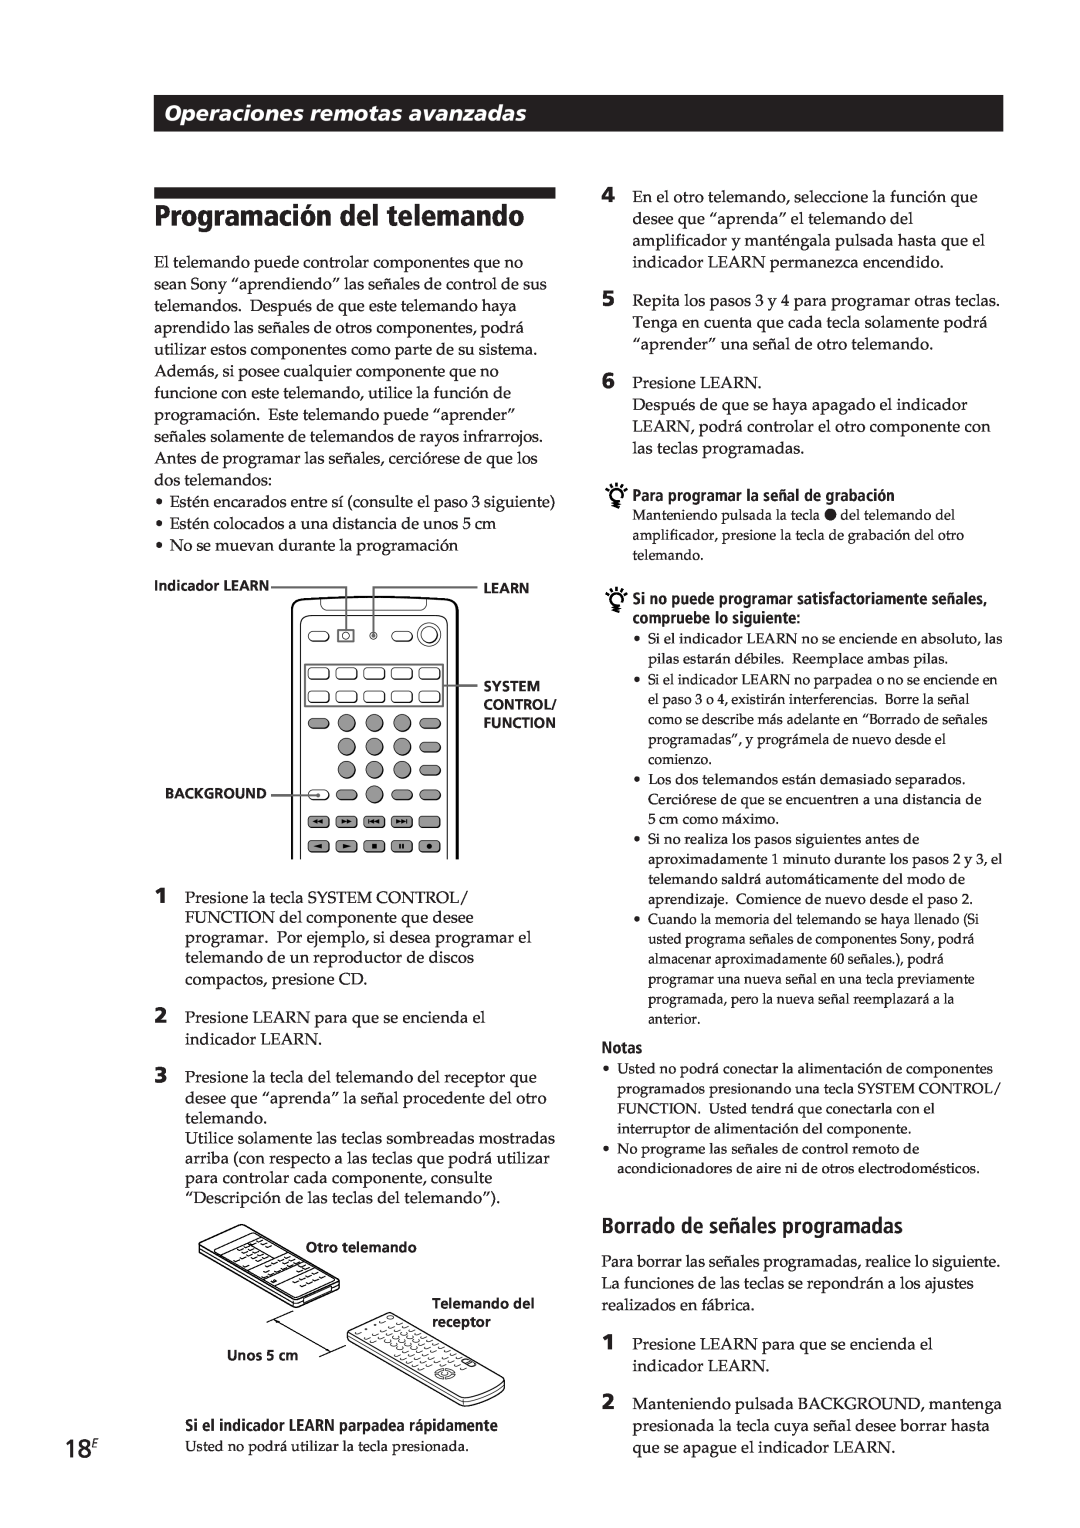 Sony TA-VE700 manual Programación del telemando, Operaciones remotas avanzadas, Borrado de señales programadas, Notas 